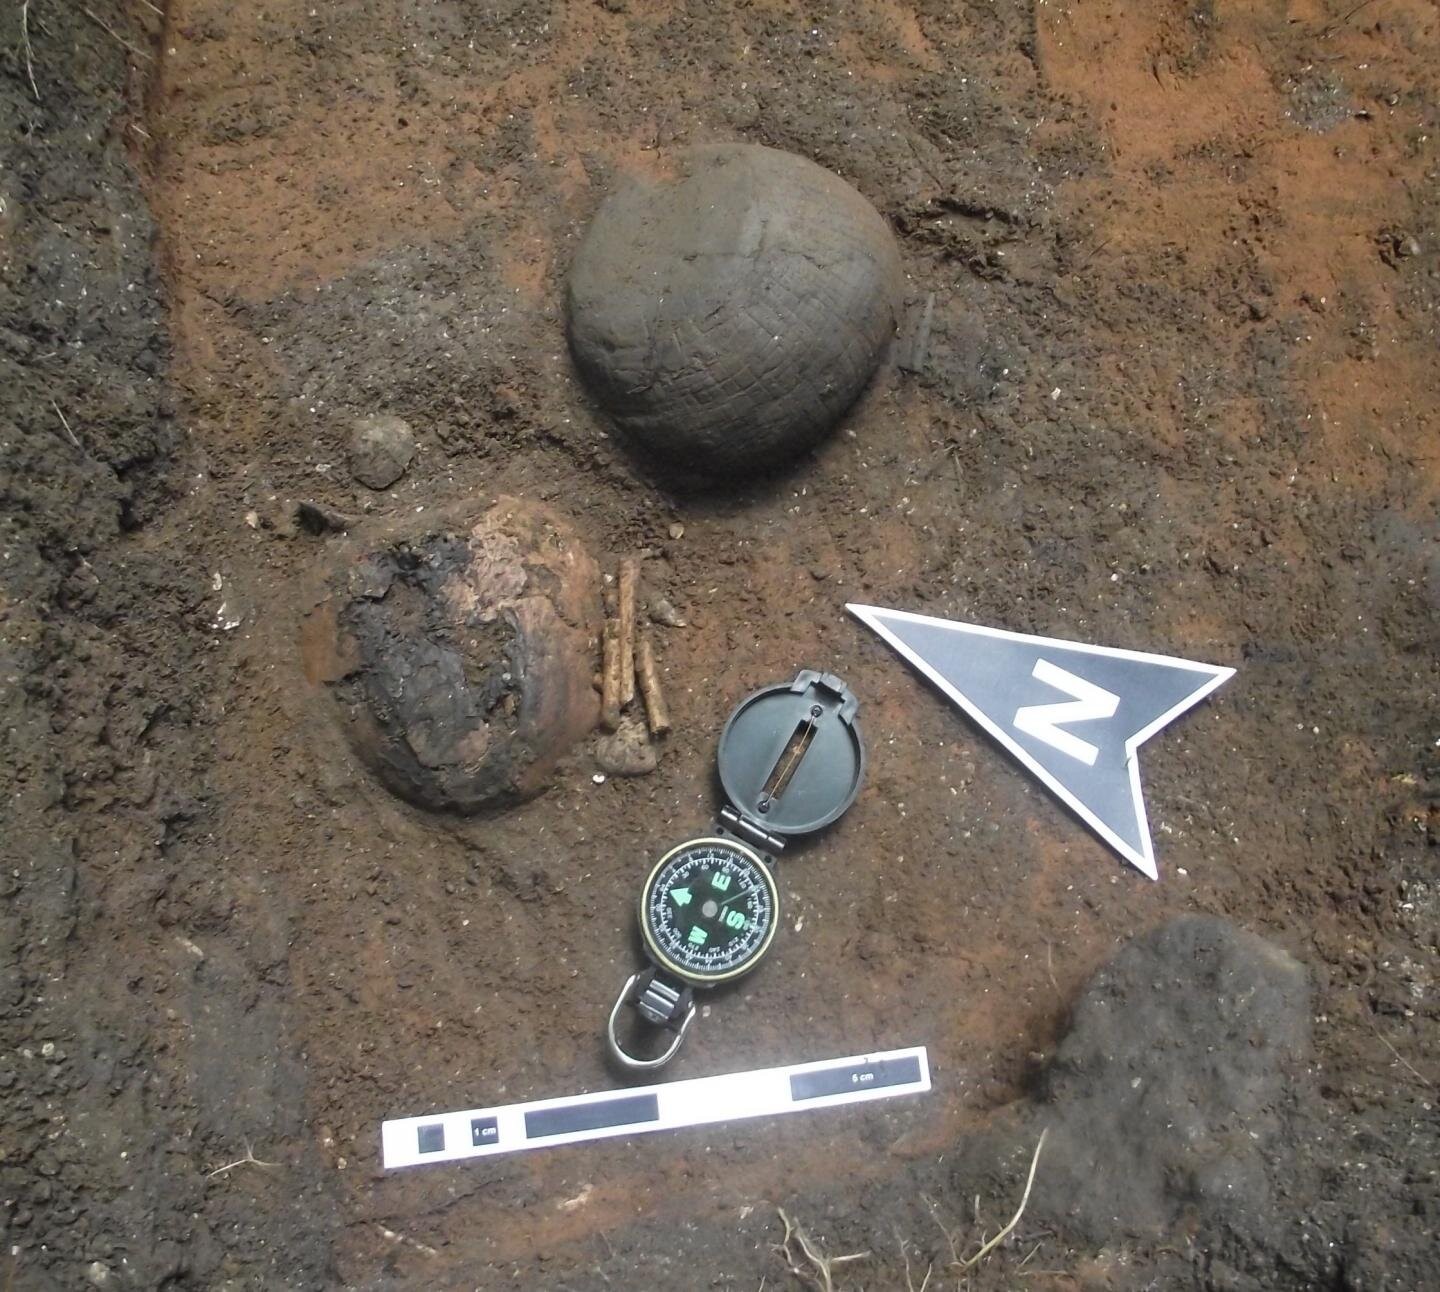 Enterro humano e cerâmica encontradas no Maranhão (Foto: André Colonese/Universidade Autônoma de Barcelona)